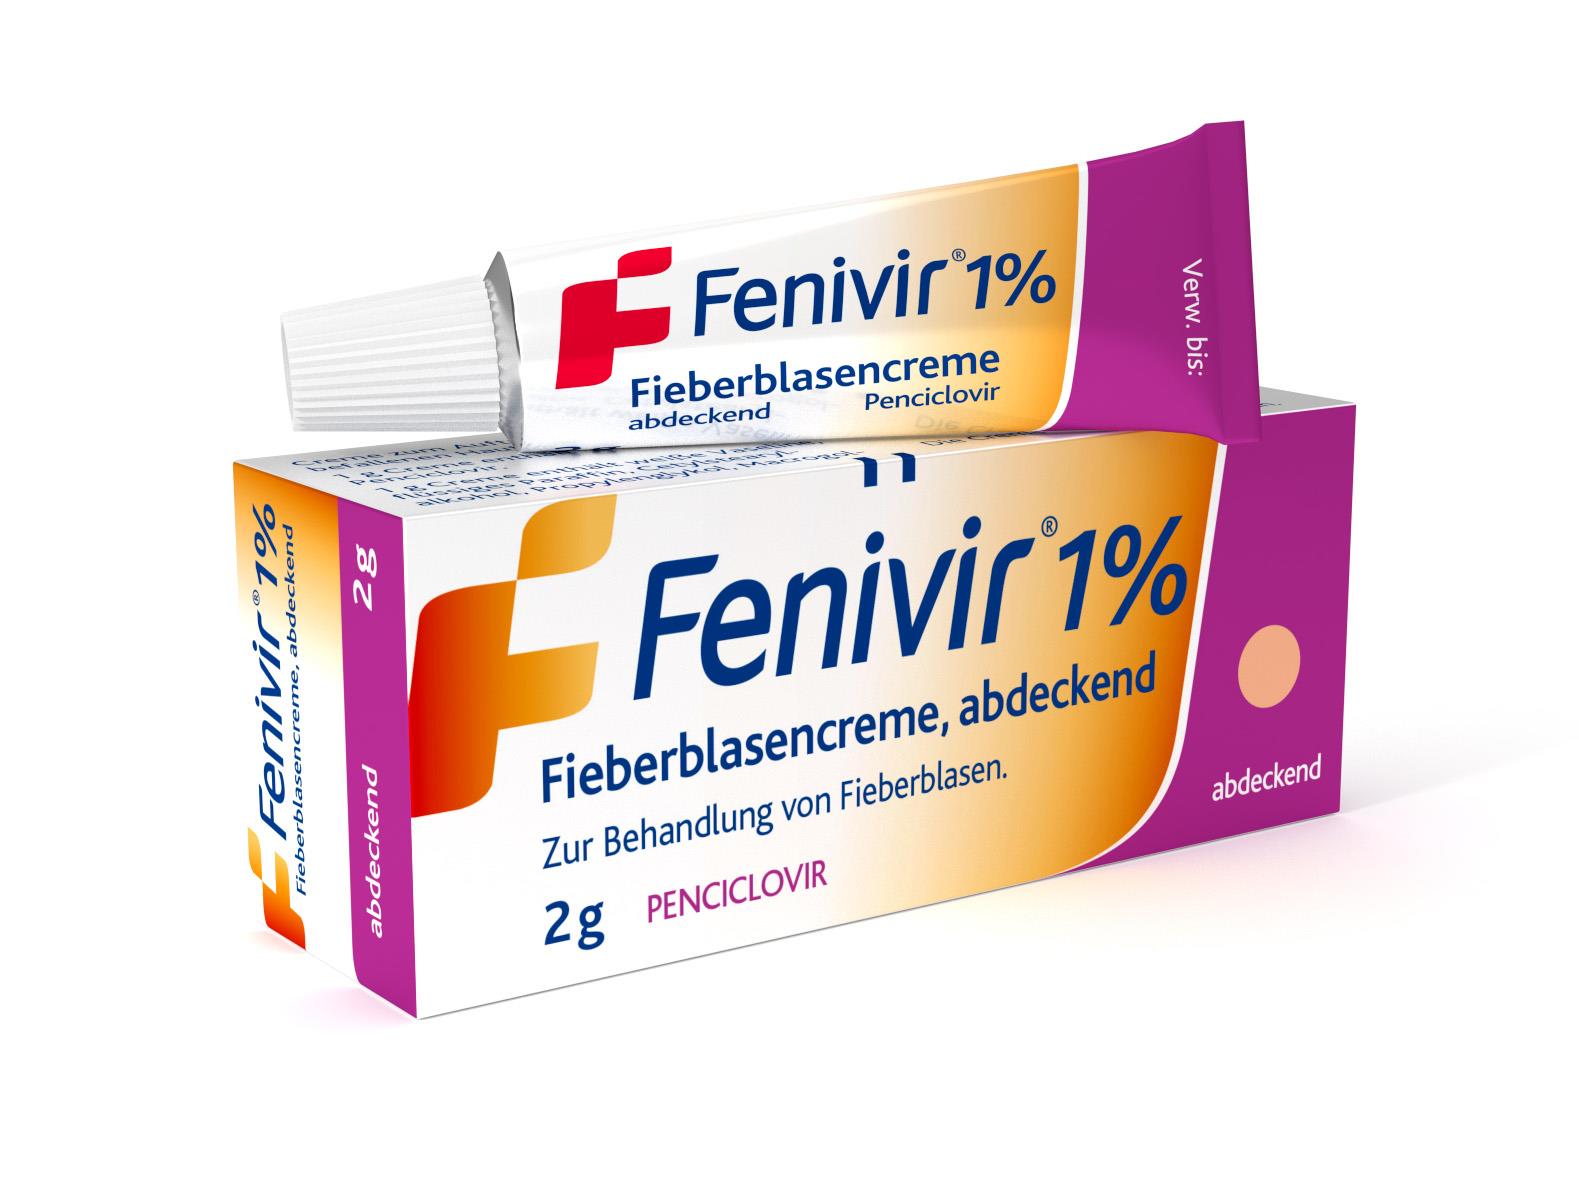 Fenivir 1% - Fieberblasencreme, abdeckend